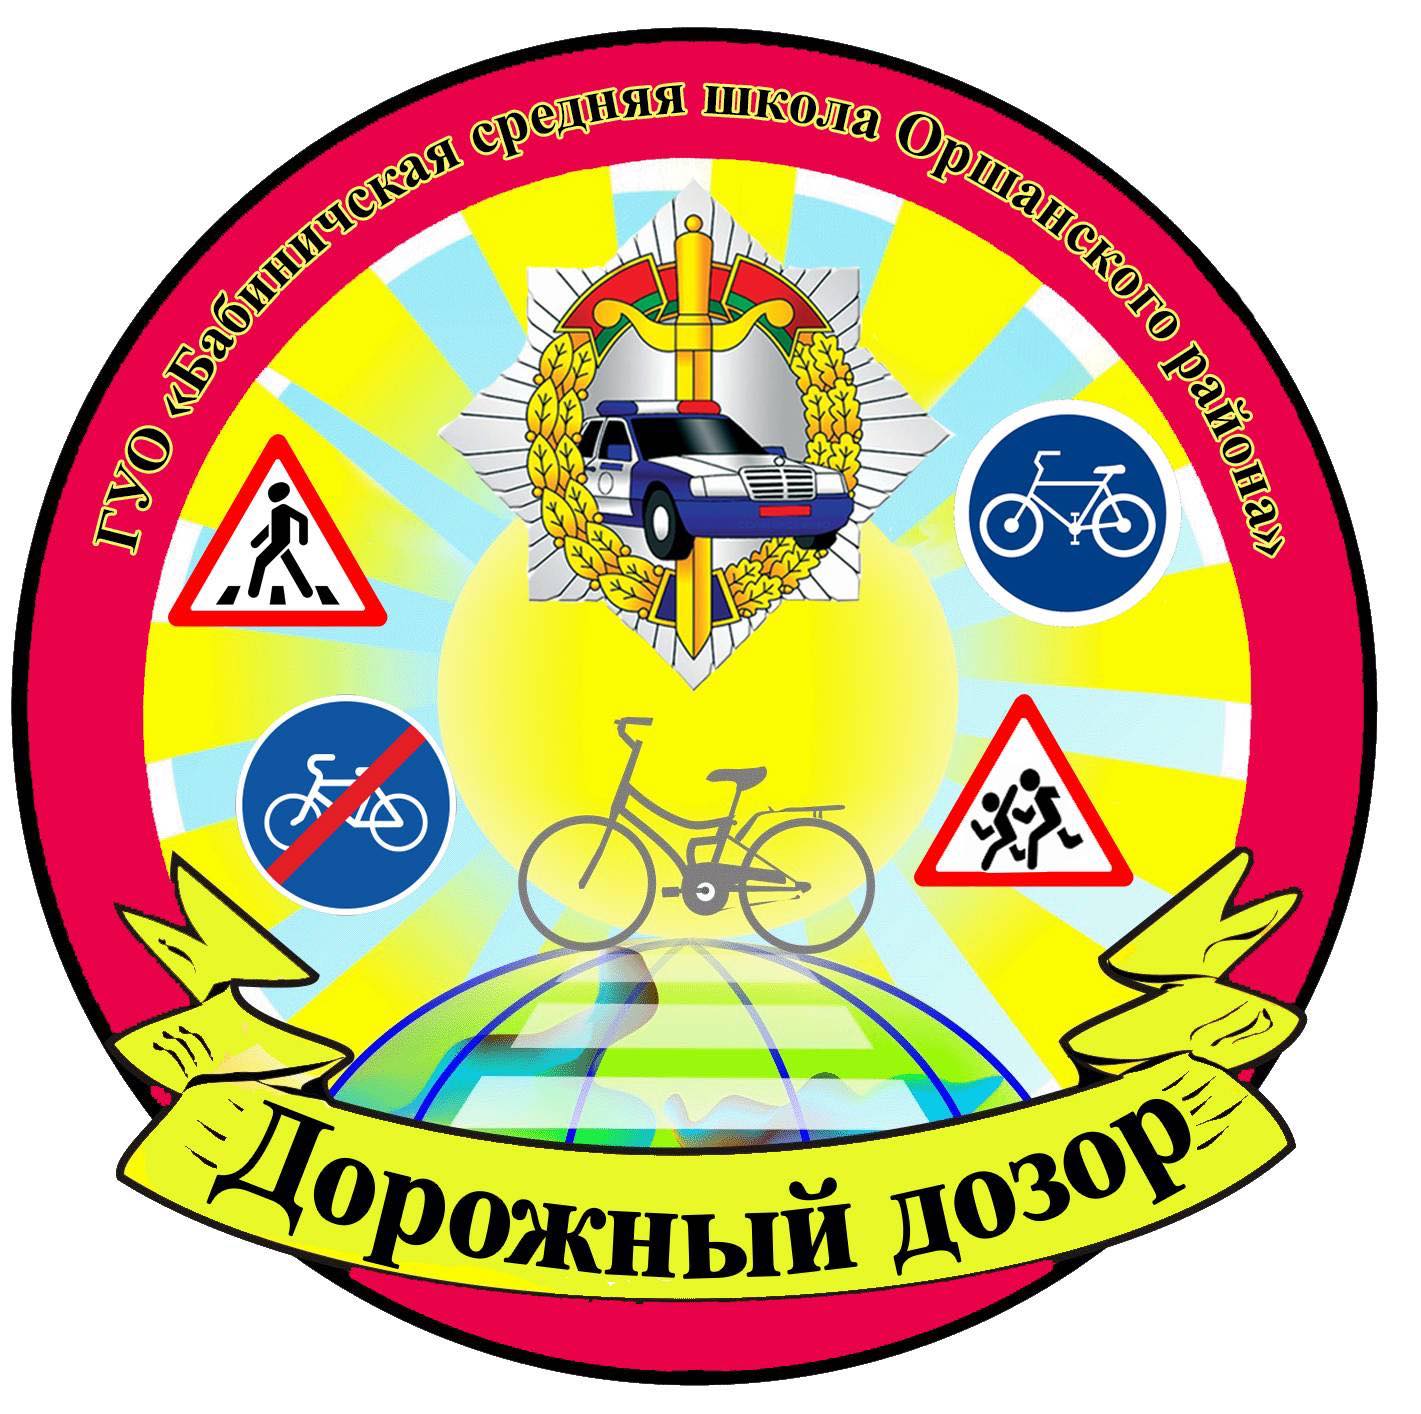 Дорожный дозор (лого)